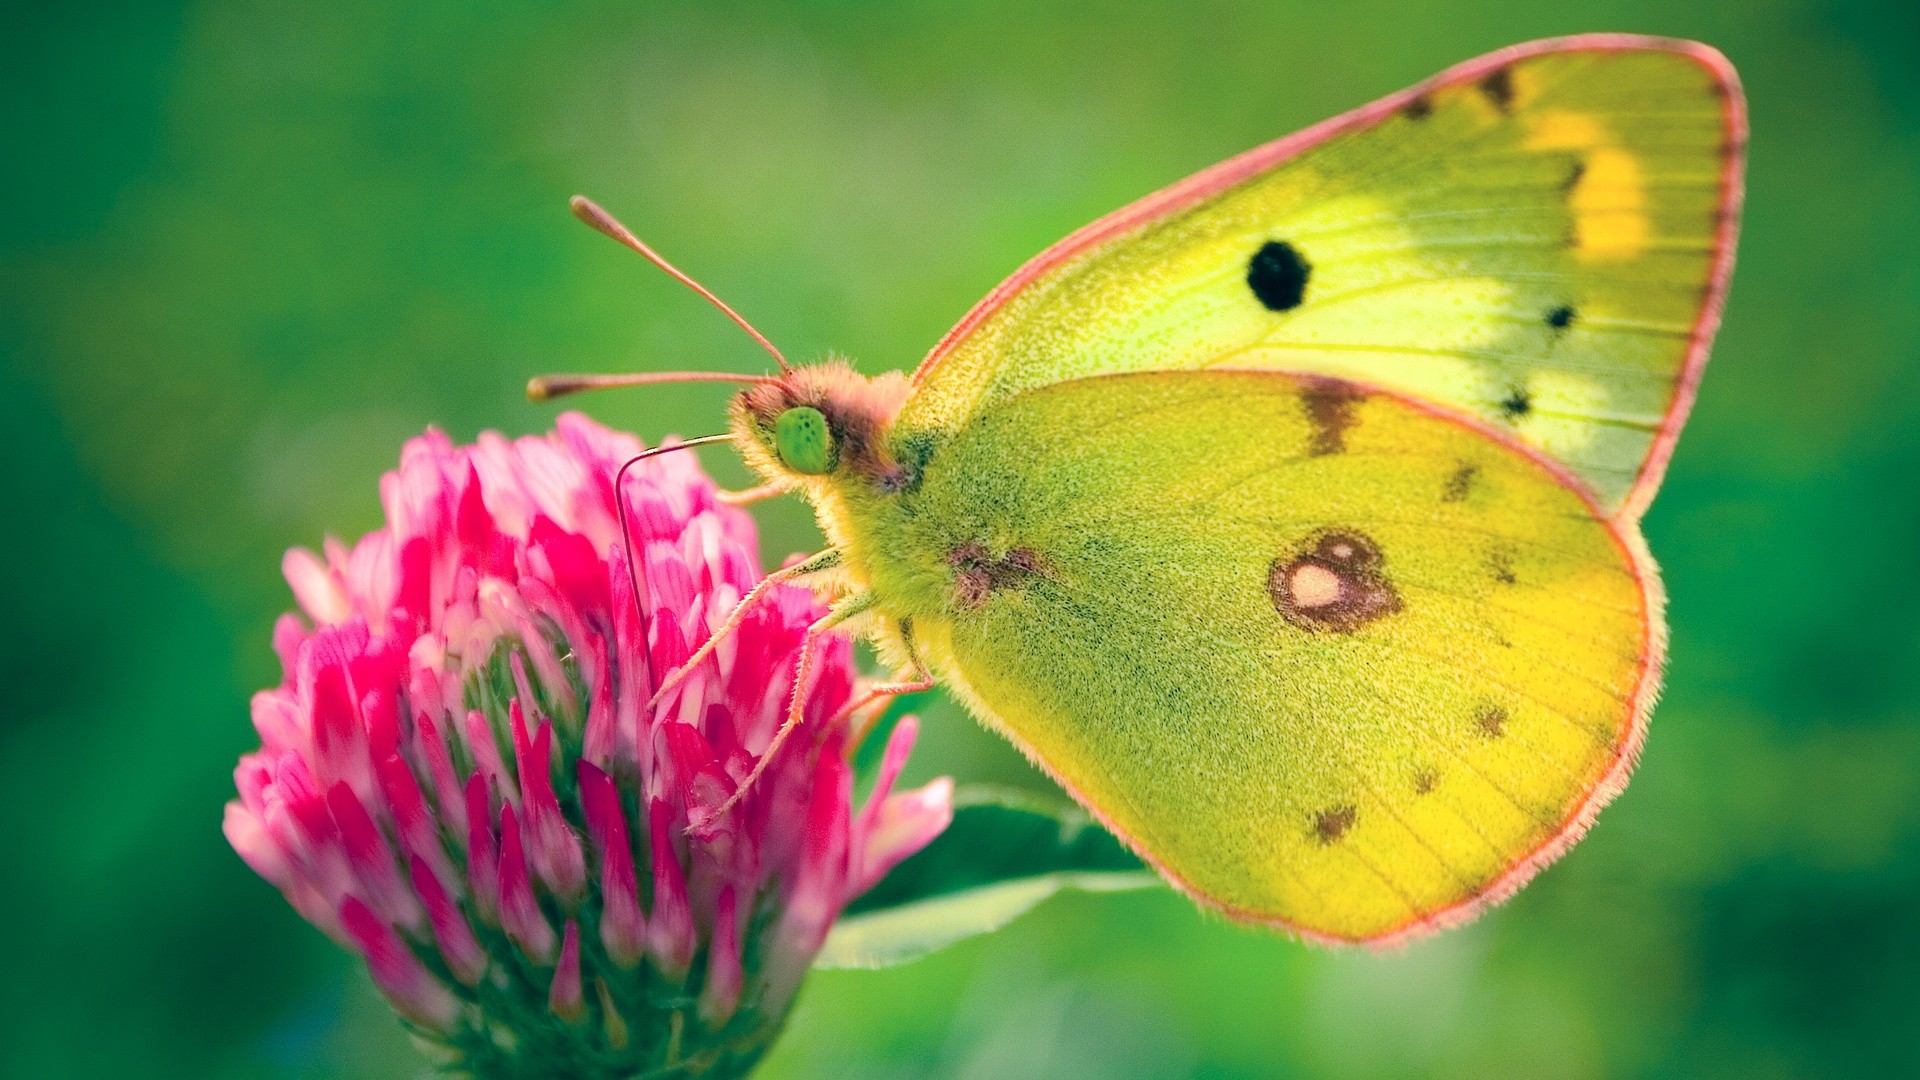 Butterfly wallpaper ·① Download free beautiful full HD ...